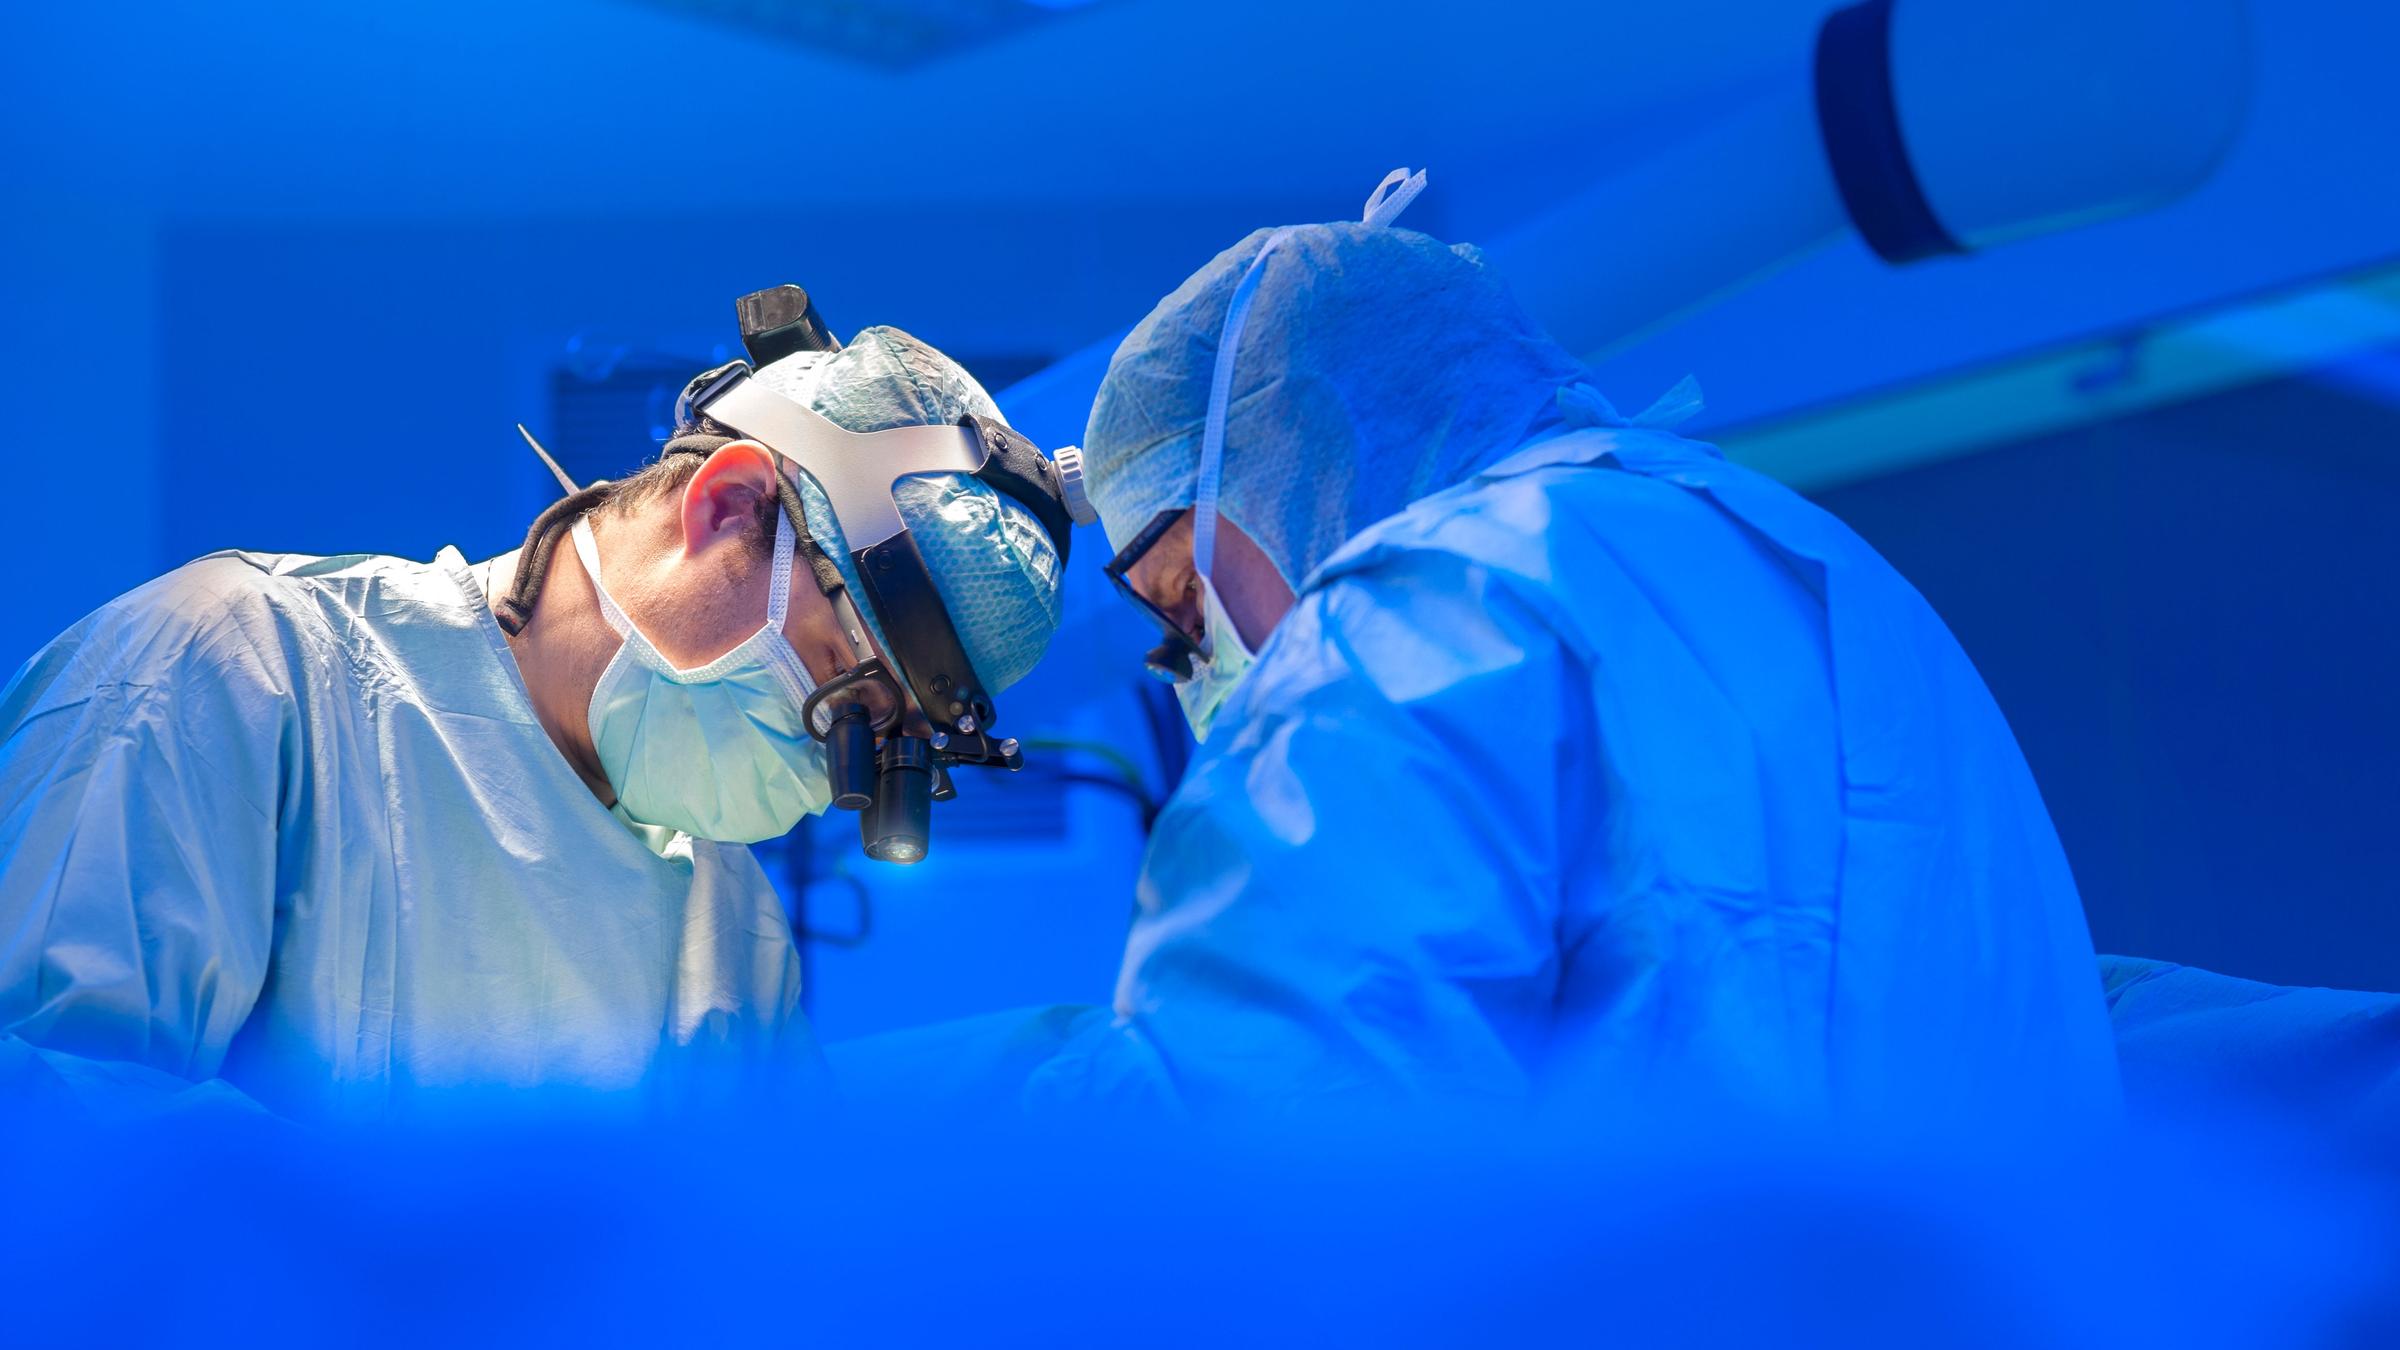 Zwei Ärzte in OP-Kleidung stehen in einem OP-Saal und scheinen zu operieren. Das Licht ist kühl, sie tragen helle Kleidung. 